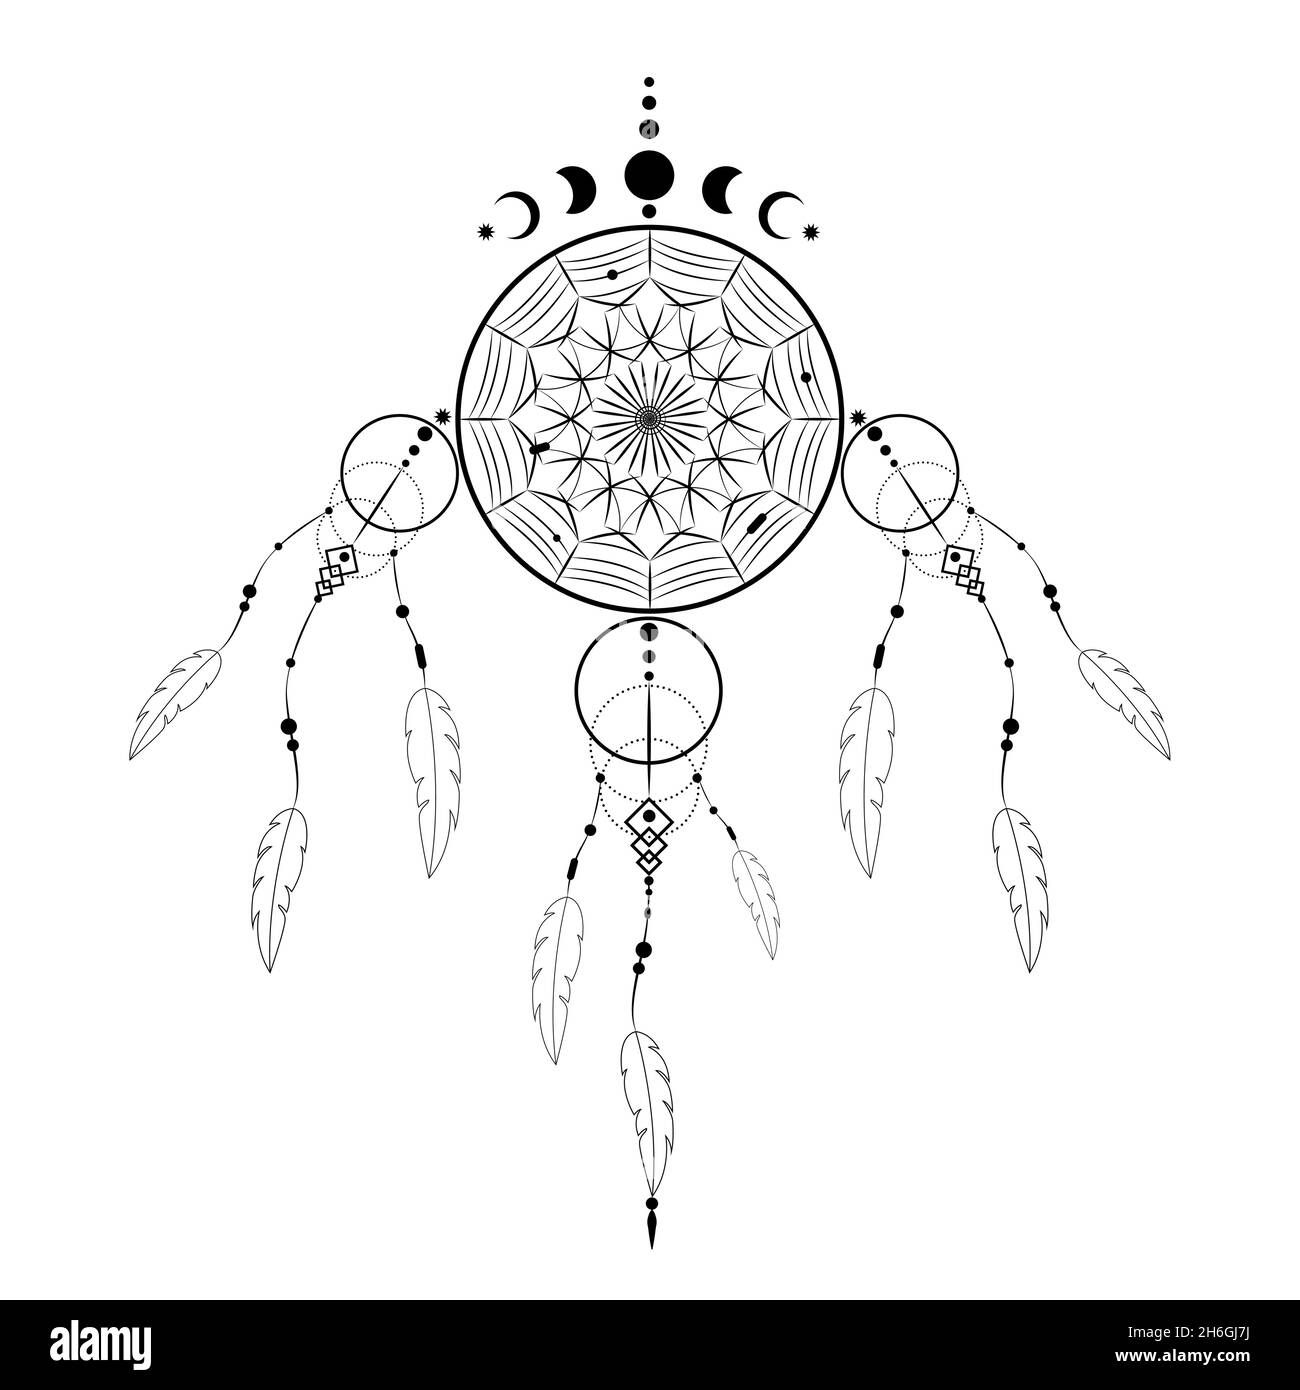 Detailreicher Traumfänger mit Mandala-Ornament und Mondphasen. Black Mystic Symbol, ethnische Kunst mit indianischen einheimischen Boho-Design, Vektor isoliert Stock Vektor